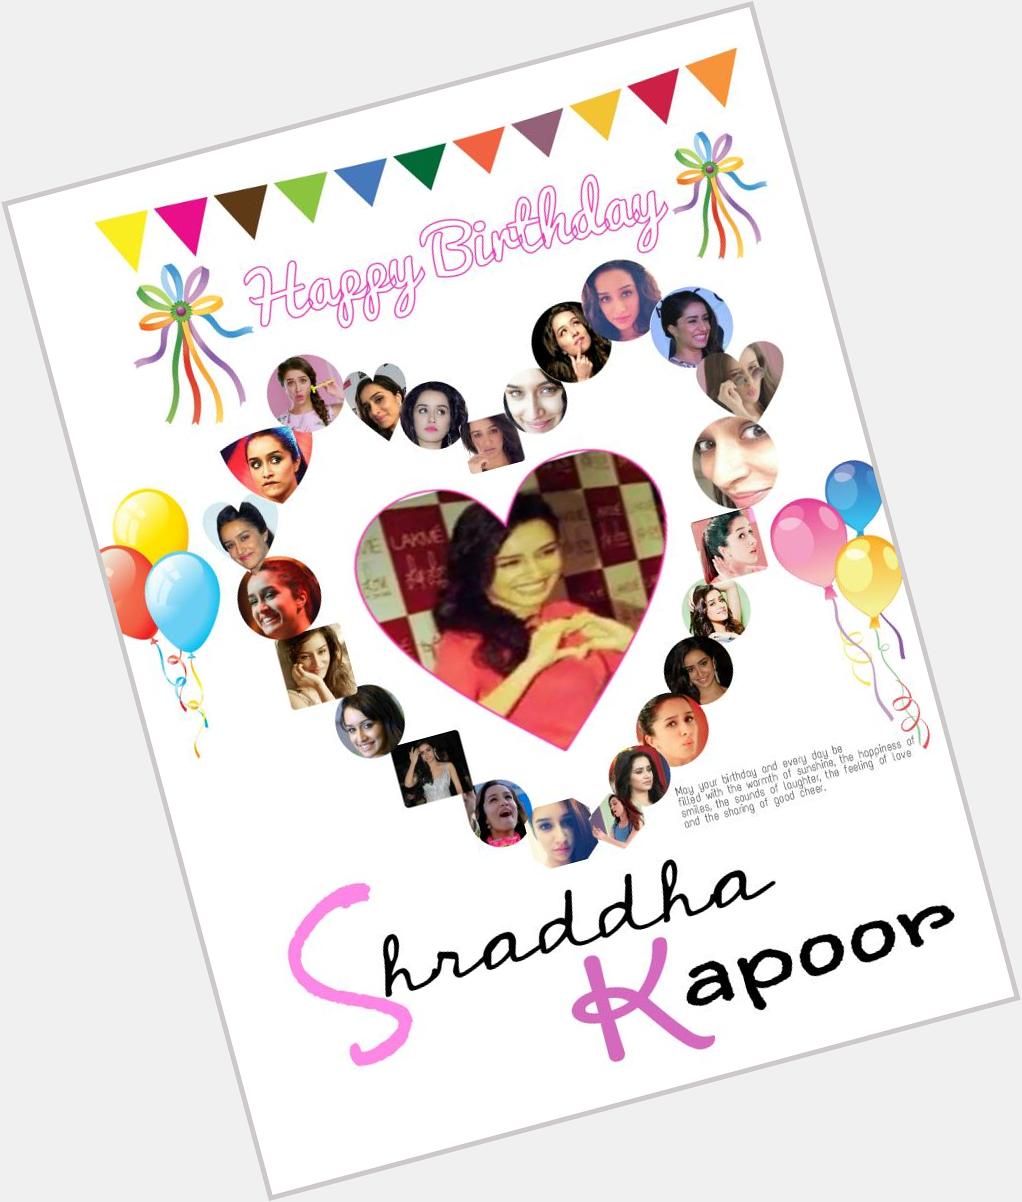 Happy Birthday Shraddha Kapoor
luv u dear ua d cutest girl on earth:*get more cuter plz giv a reply 